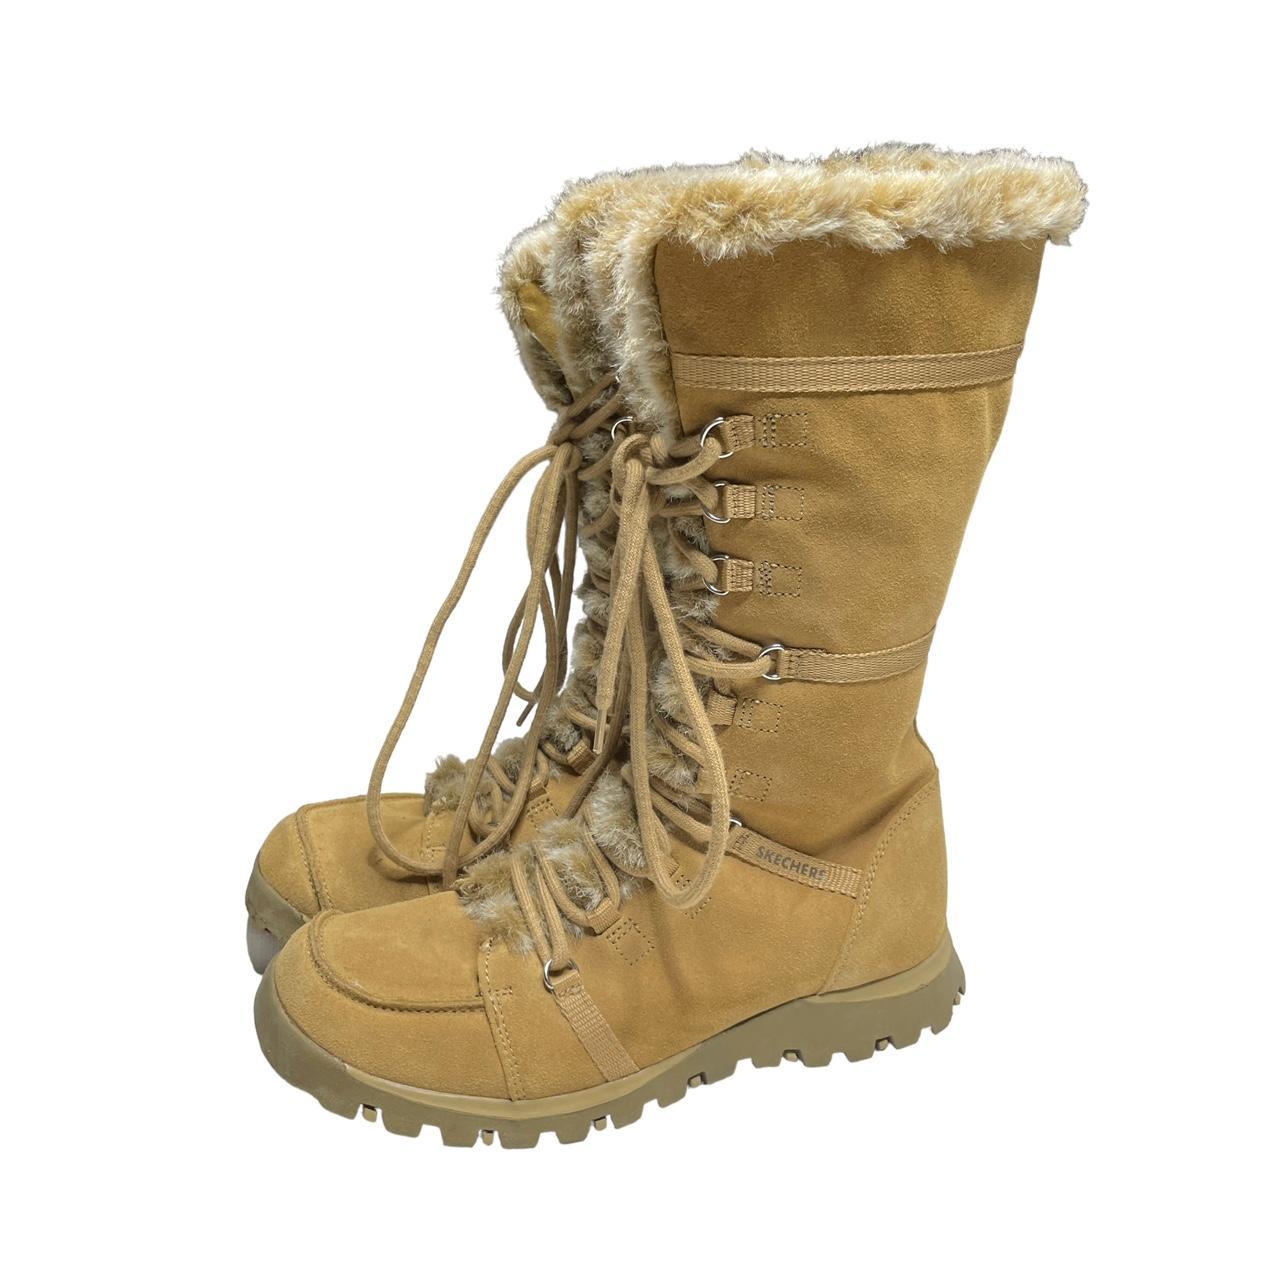 2000s Skecher Fur Lace Up Boots ★ details womens... - Depop